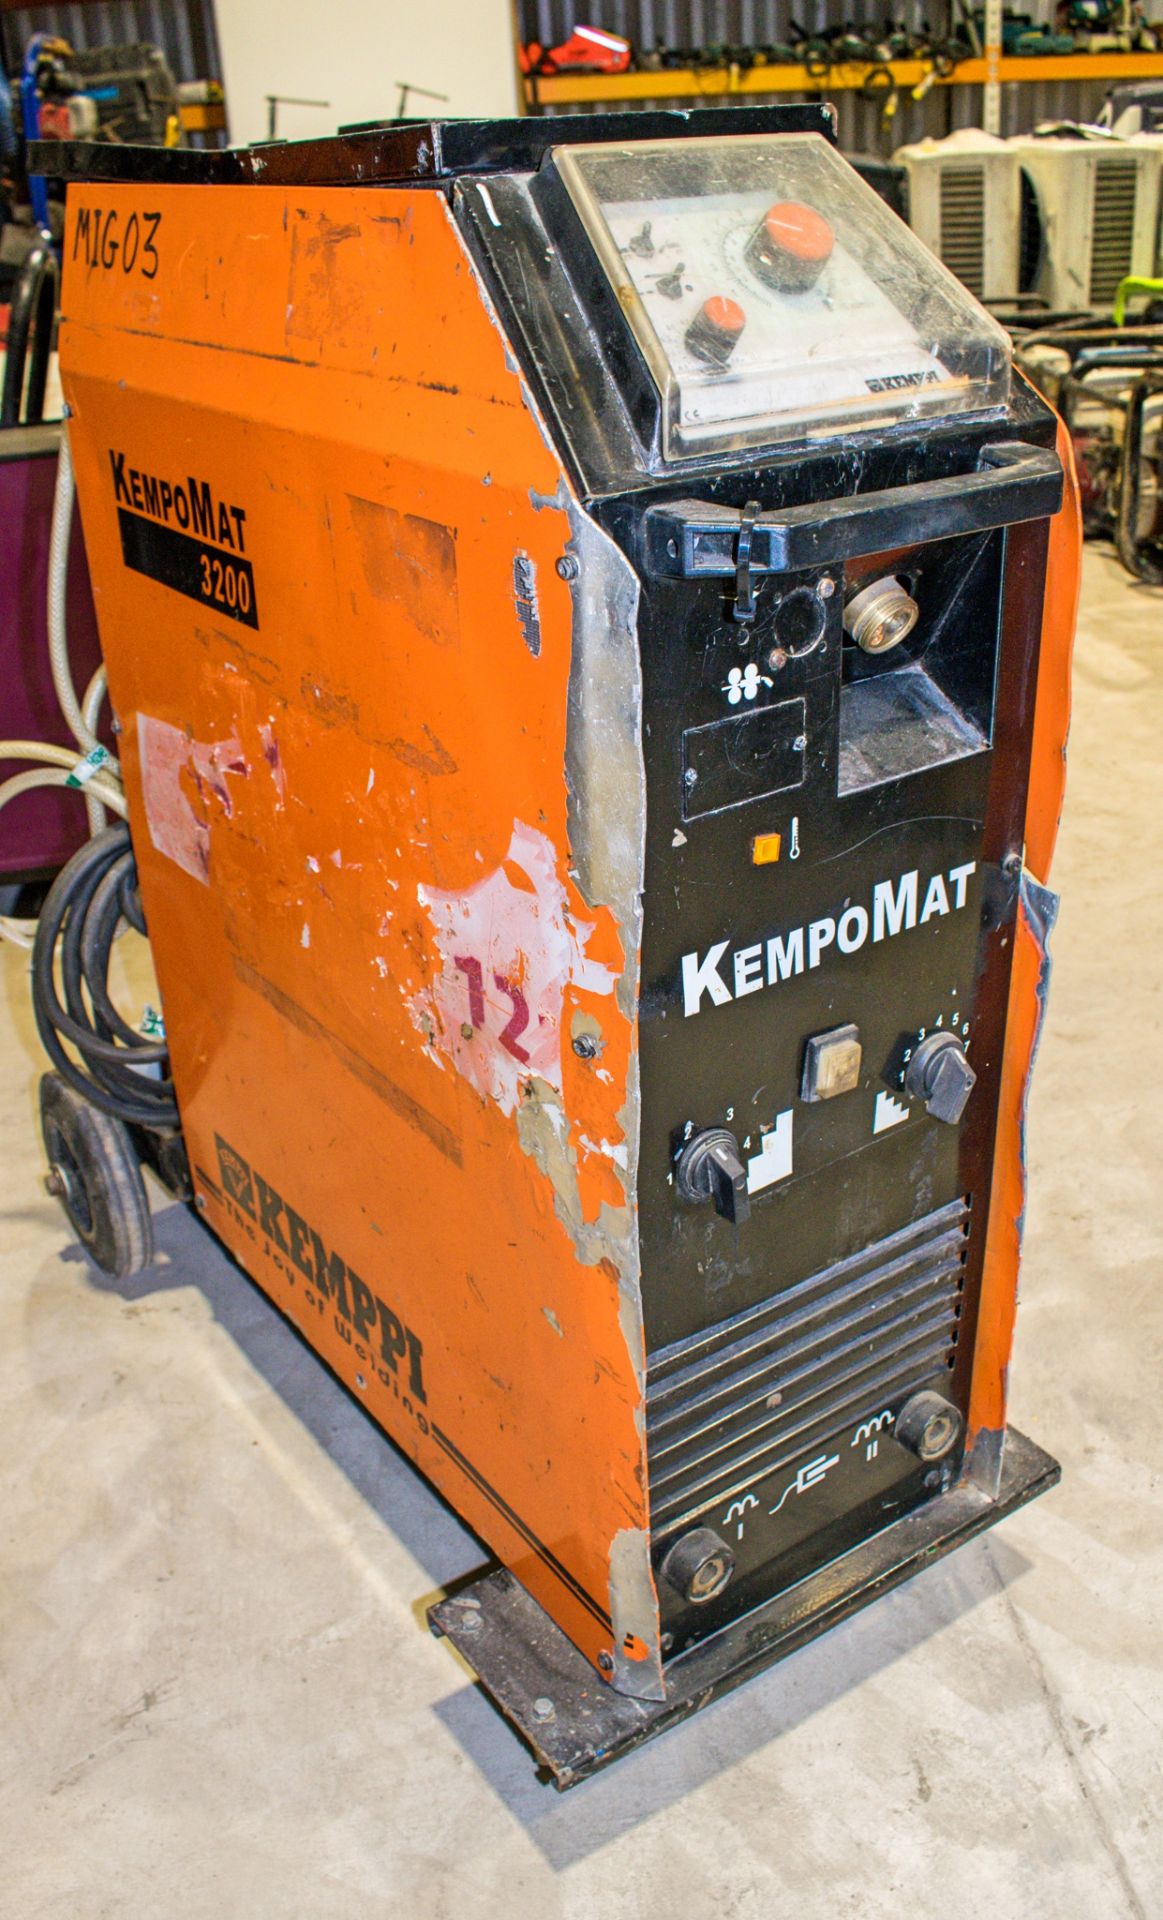 Kempi Kempomat 3200 3 phase welding set